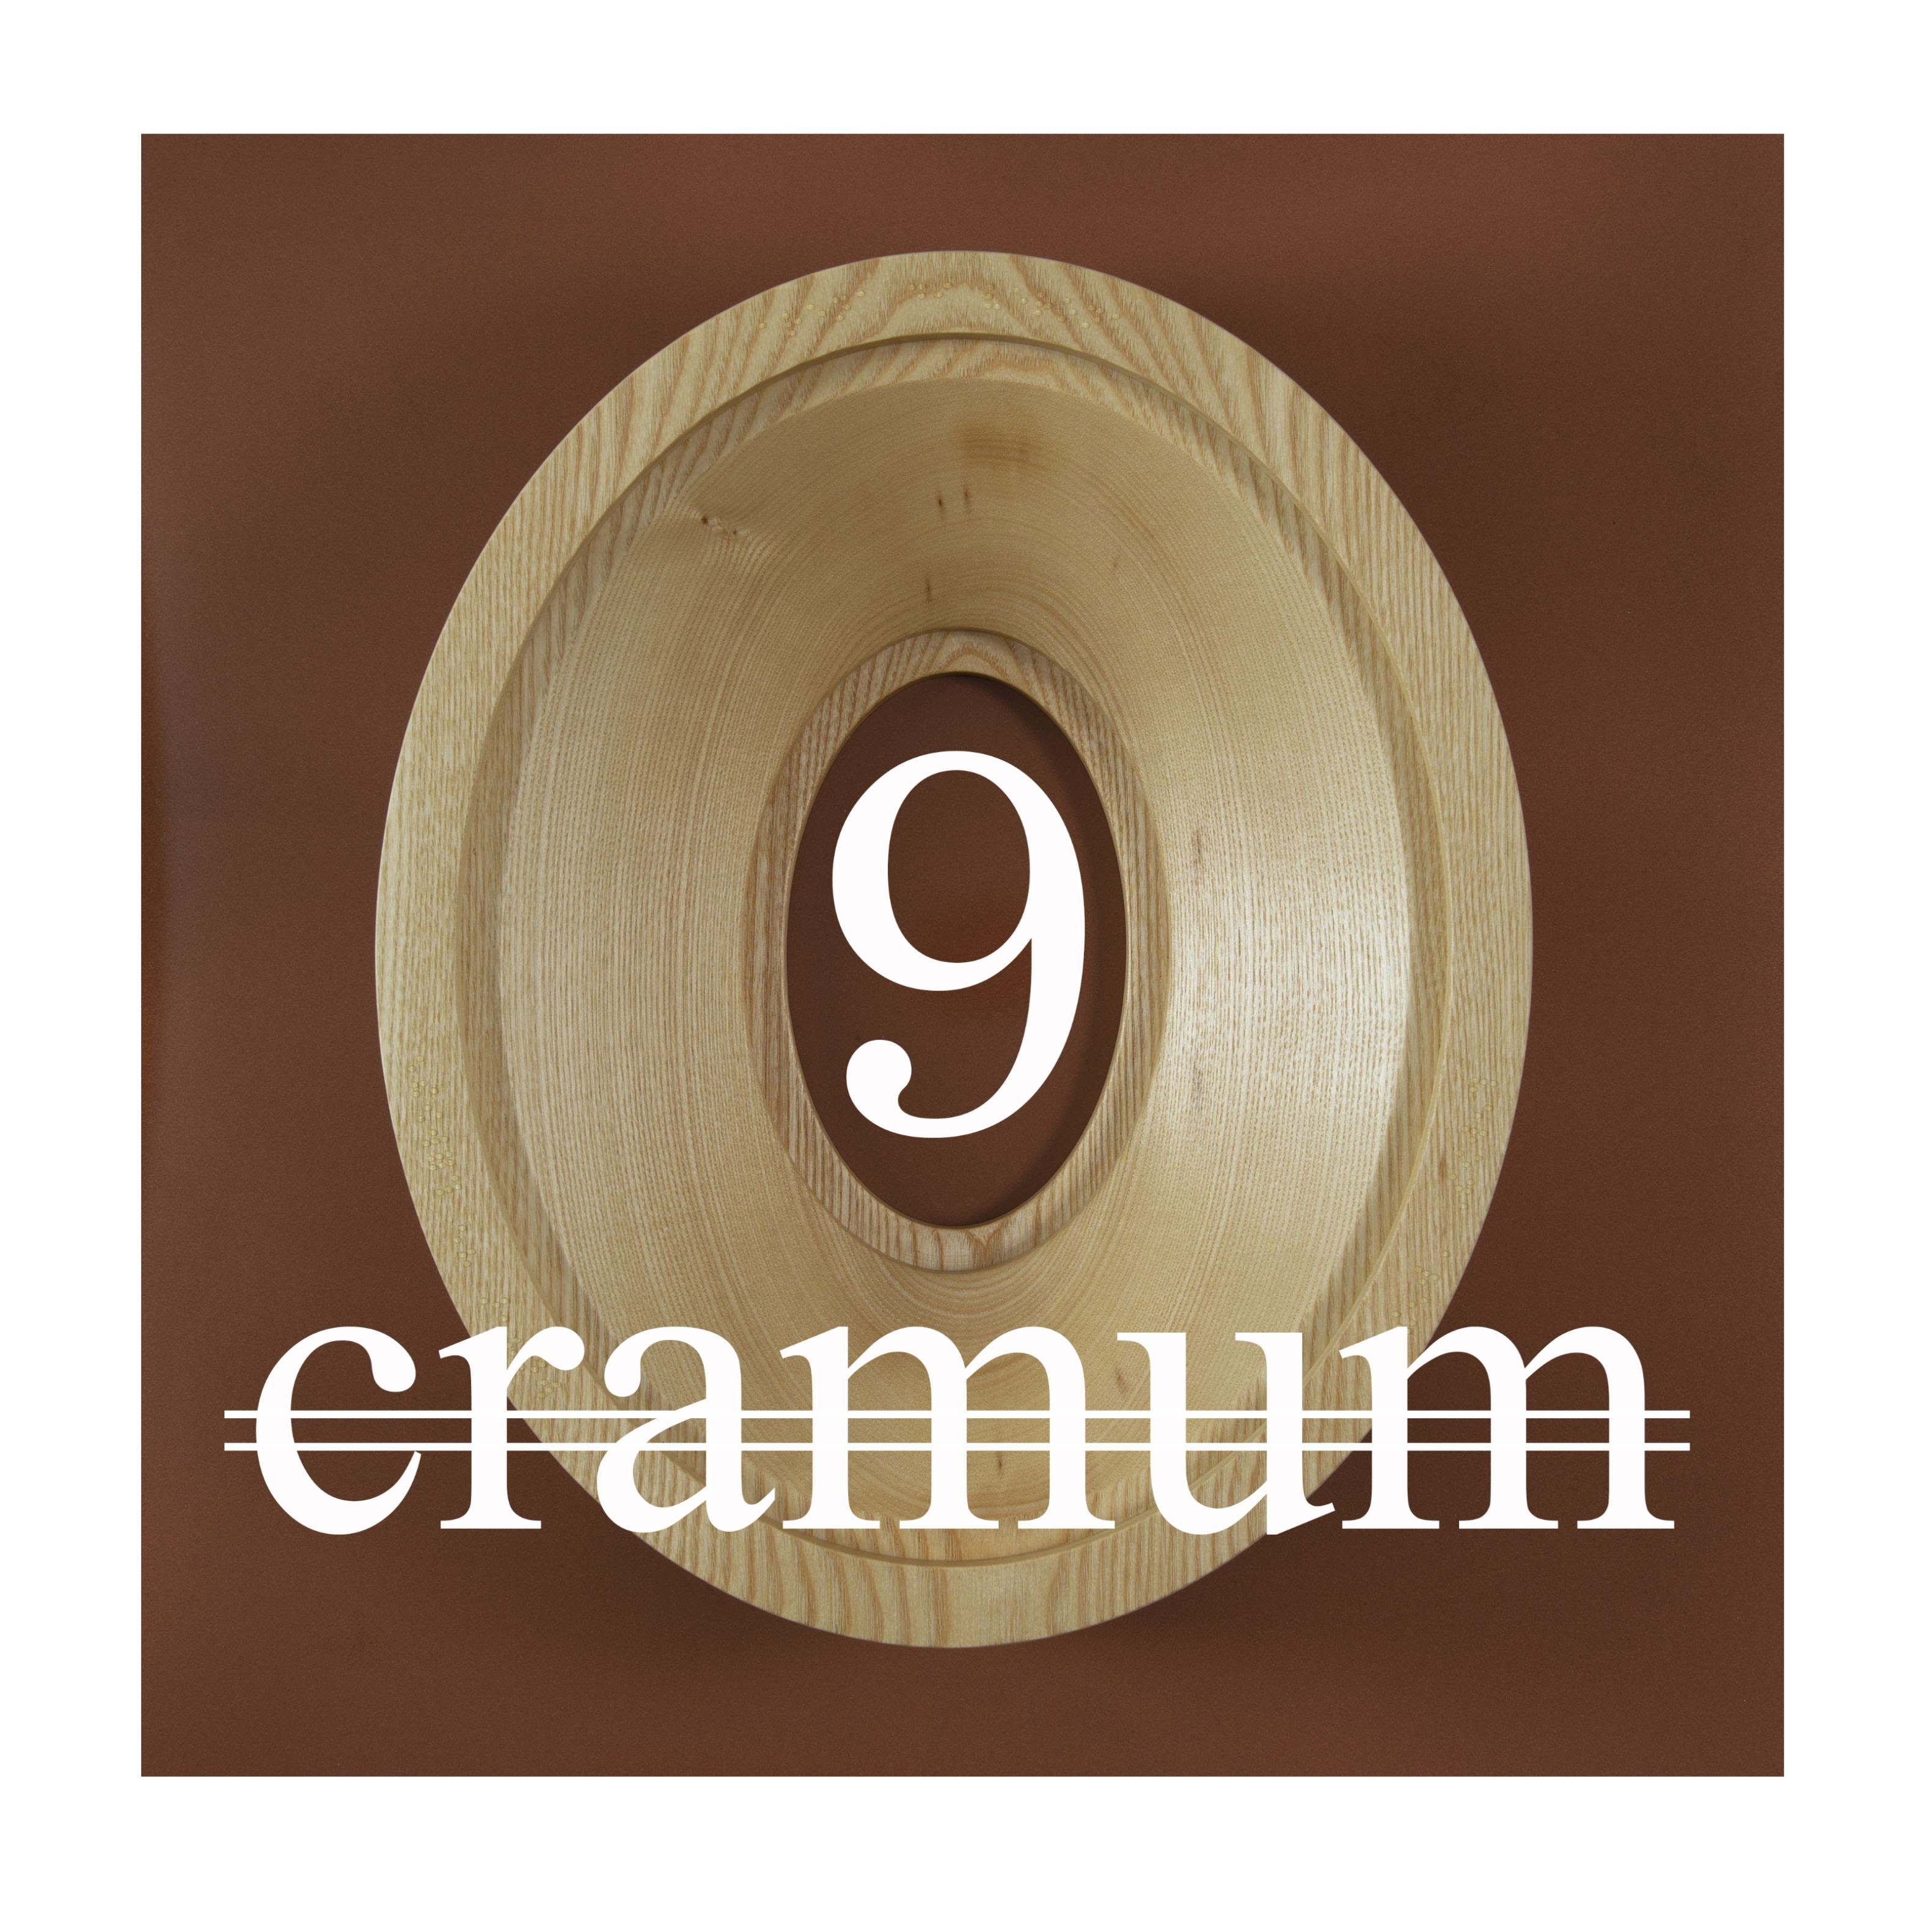 Copertina del 9° premio Cramum realizzata a partire dall'opera fuori concorso "Panem et circenses" di Fulvio Morella